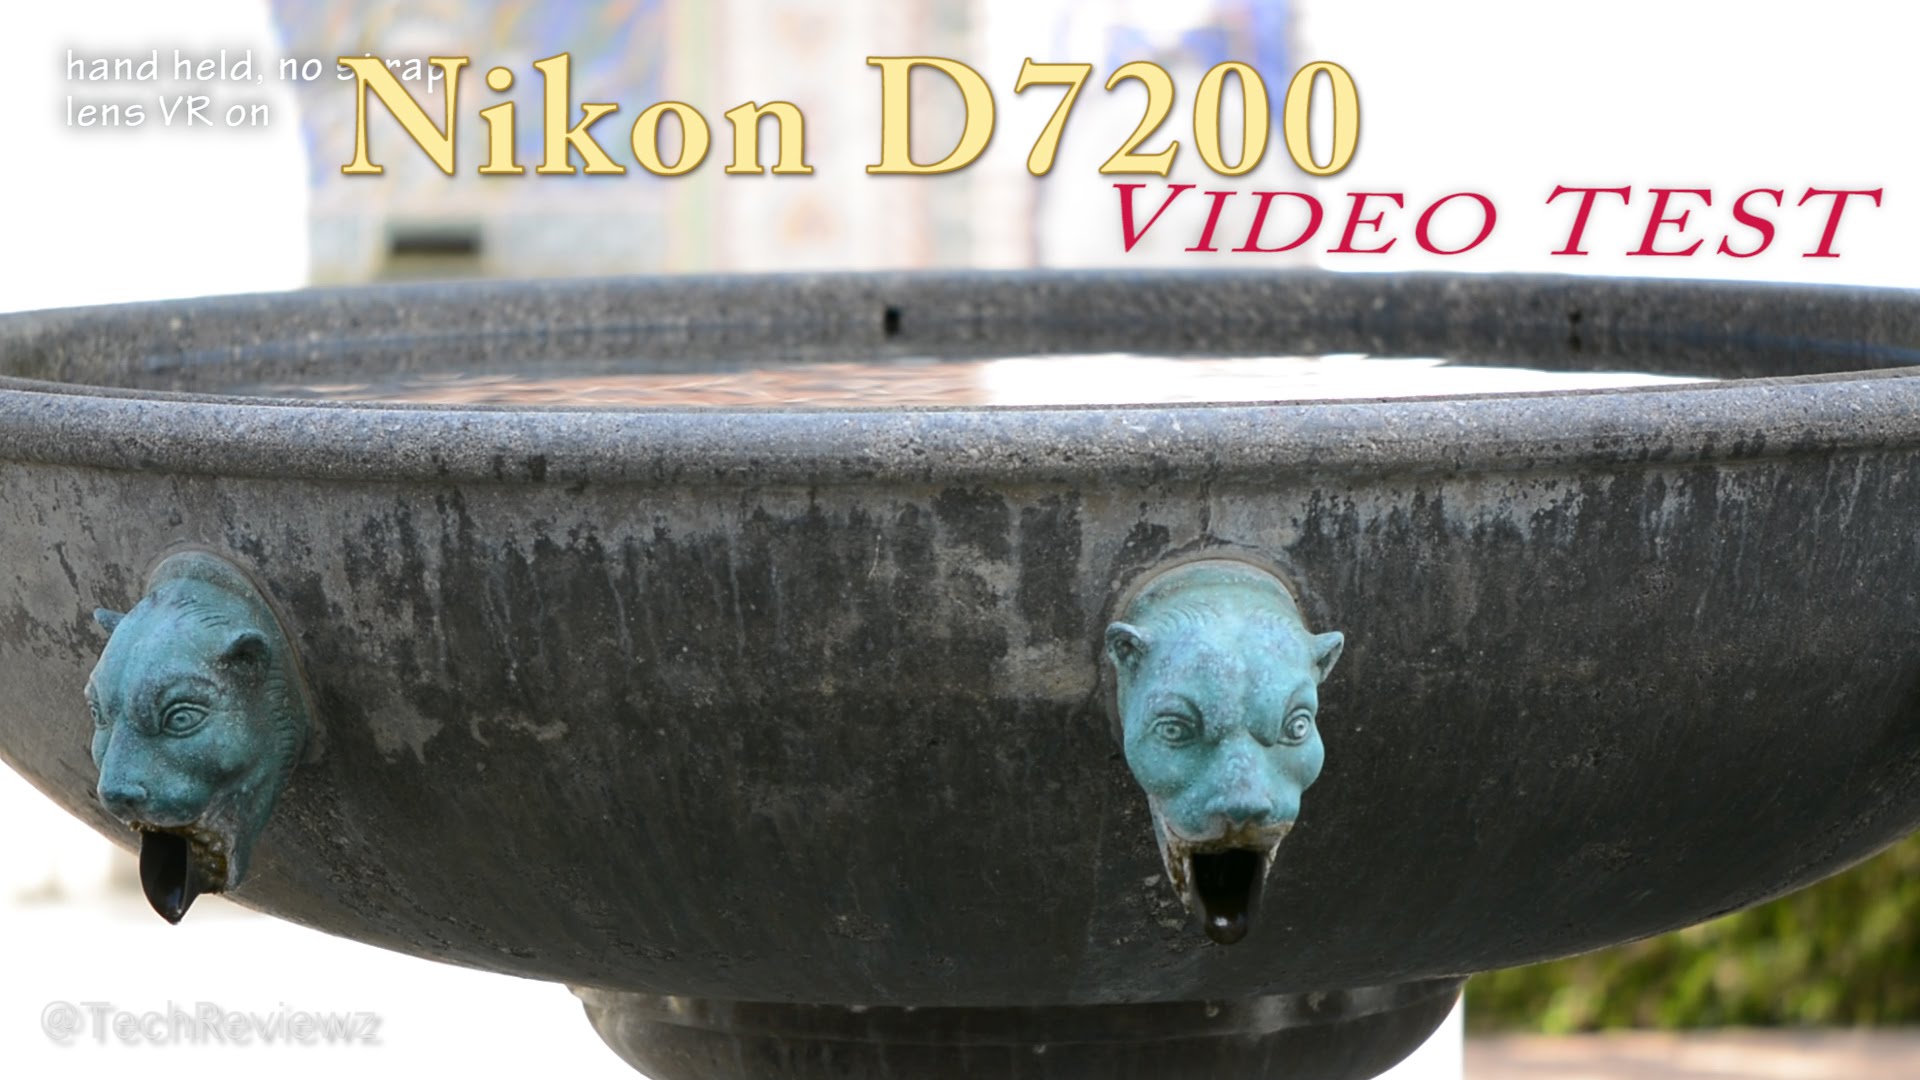 Nikon D7200 Video Test: autofocus, image quality etc.